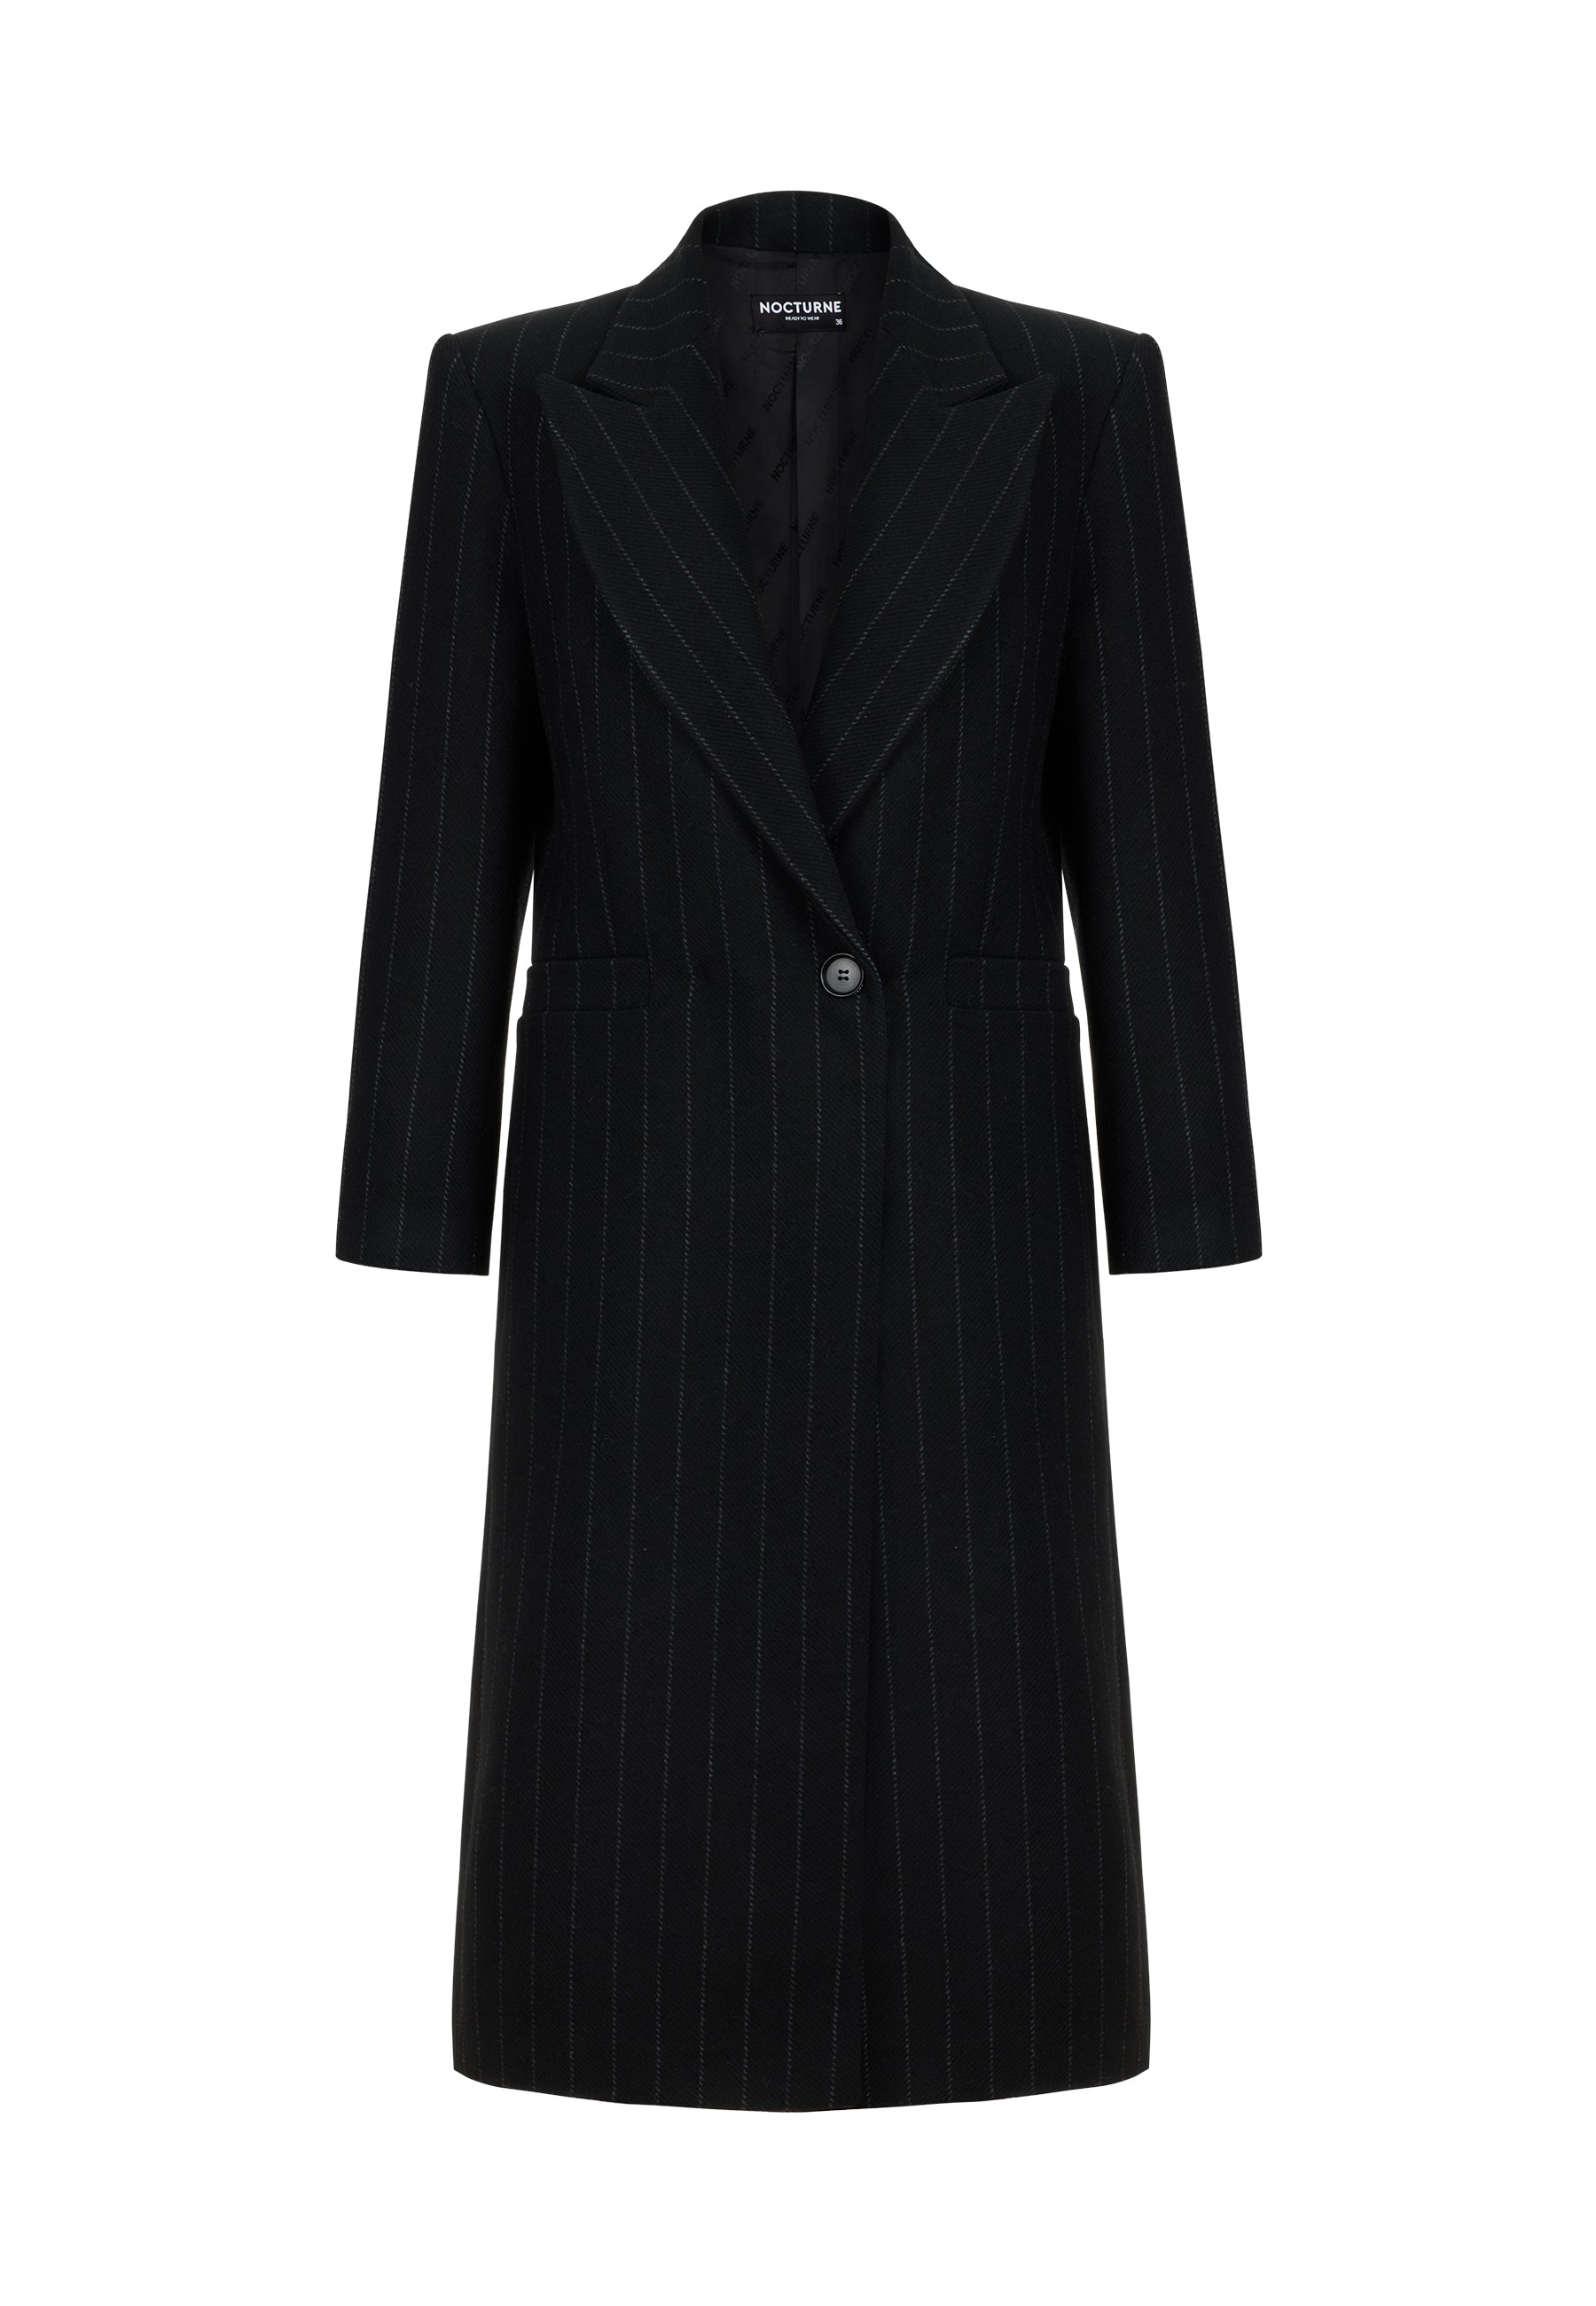 Shop Nocturne Women's Black Shoulder Pad Wool Blend Coat